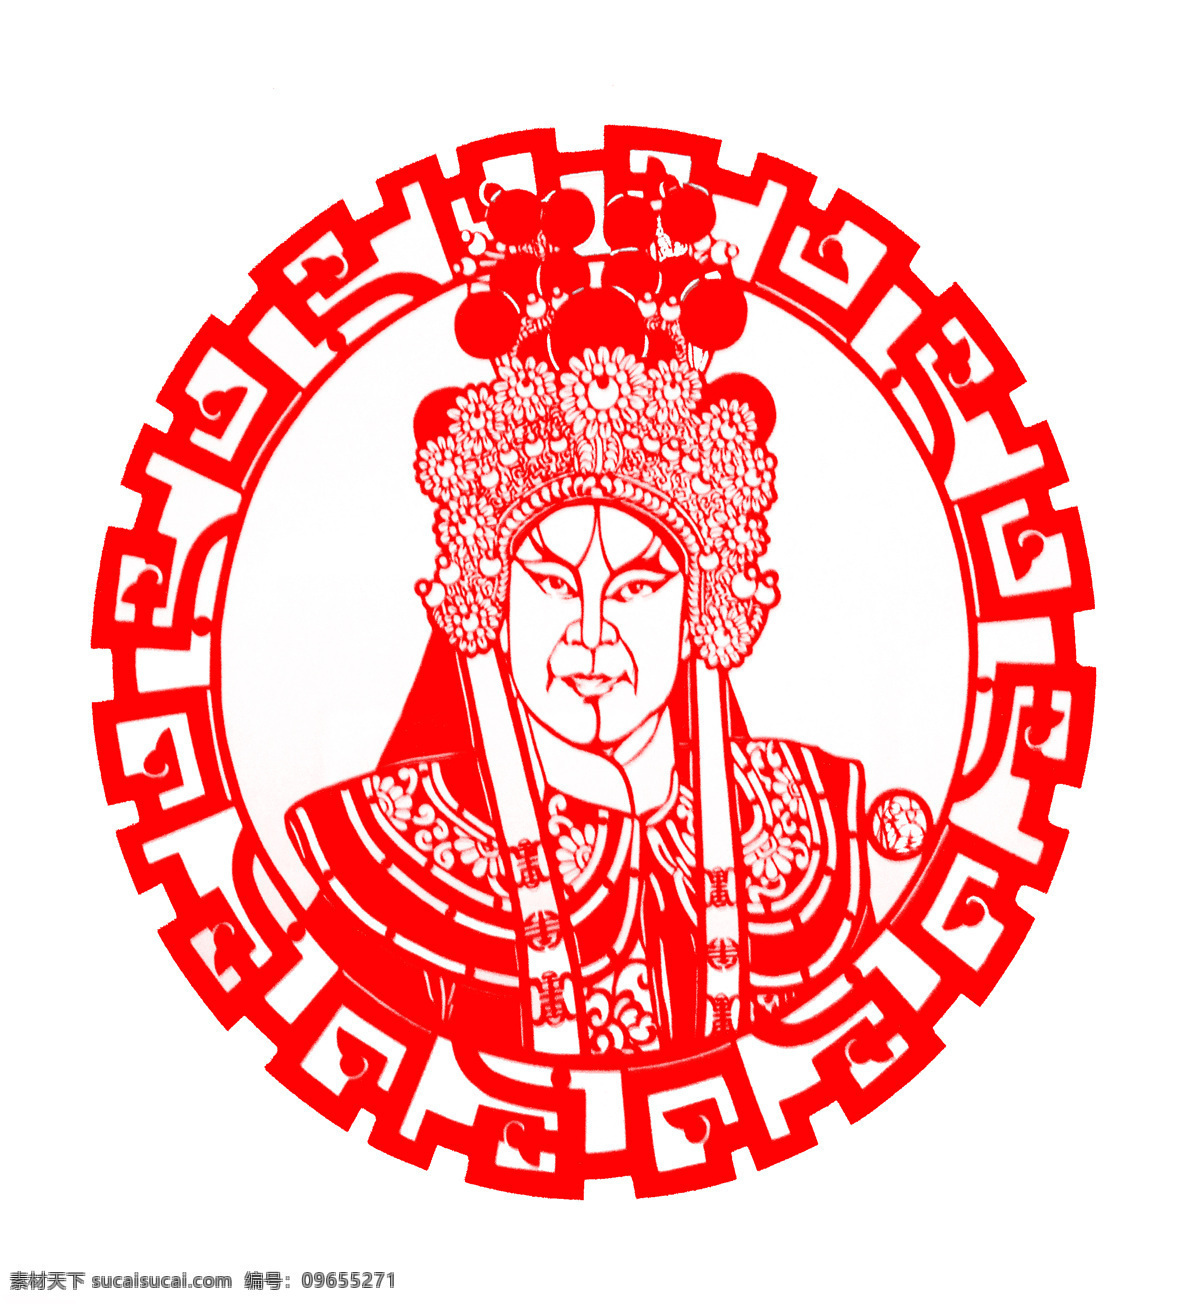 剪纸人物 剪纸 人物 民间艺术 红色 图案 中国文化 传统文化 文化艺术